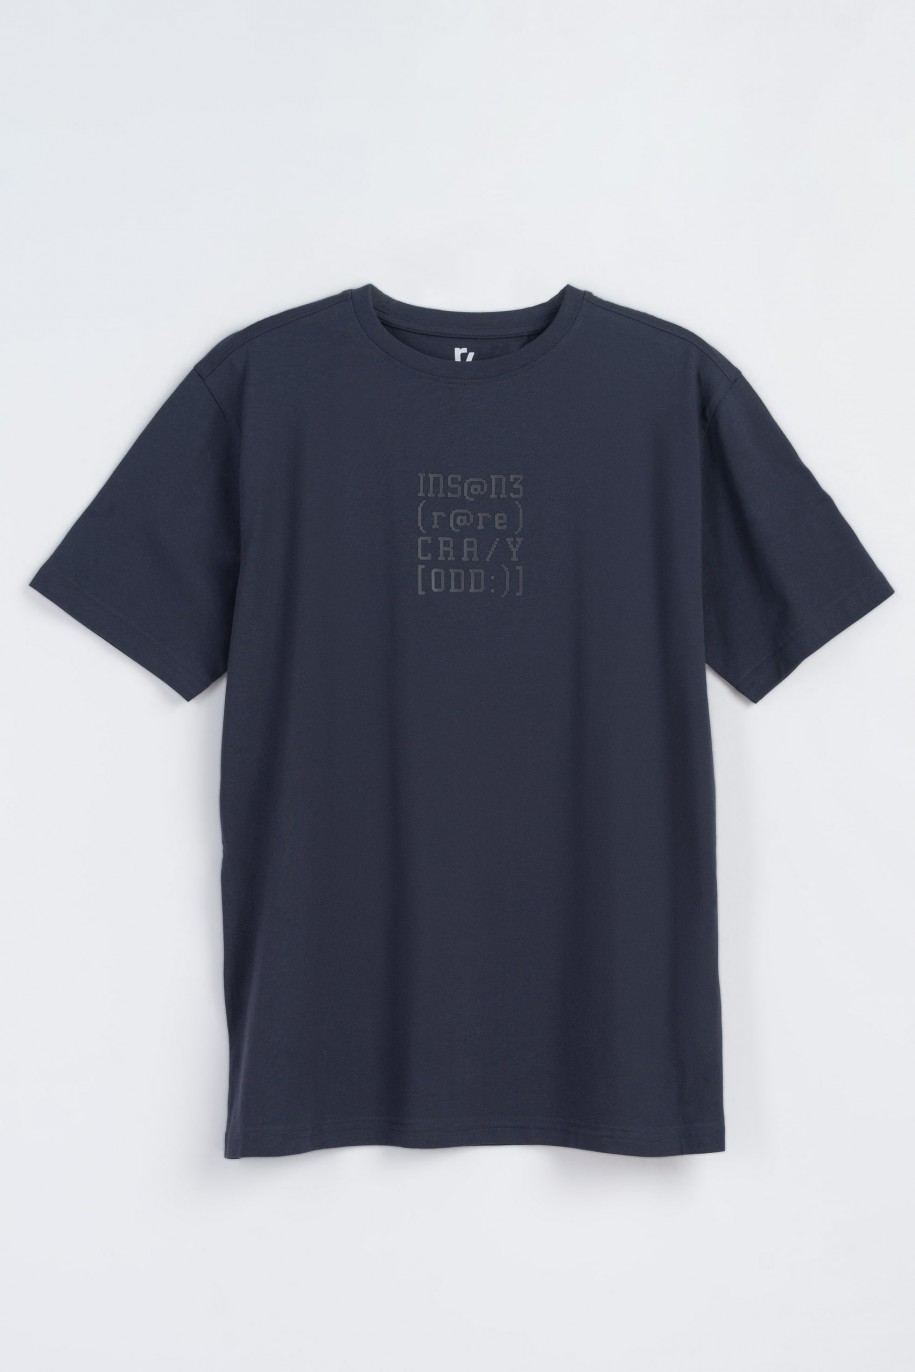 Granatowy t-shirt z niebieskim nadrukiem na wysokości piersi - 47383